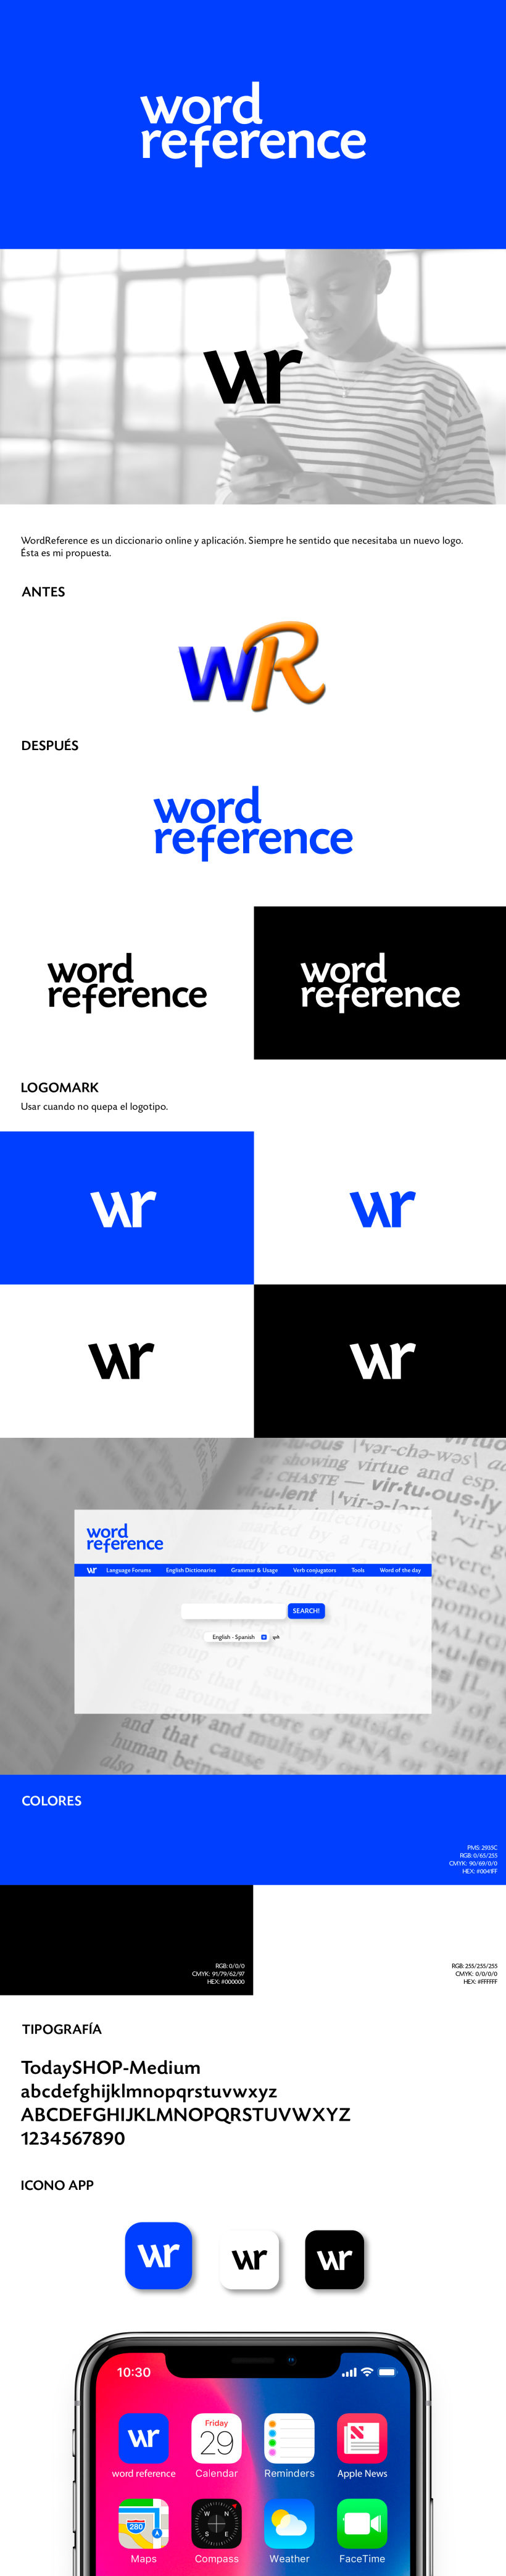 Mi Proyecto del curso: Cómo elegir tipografías 0